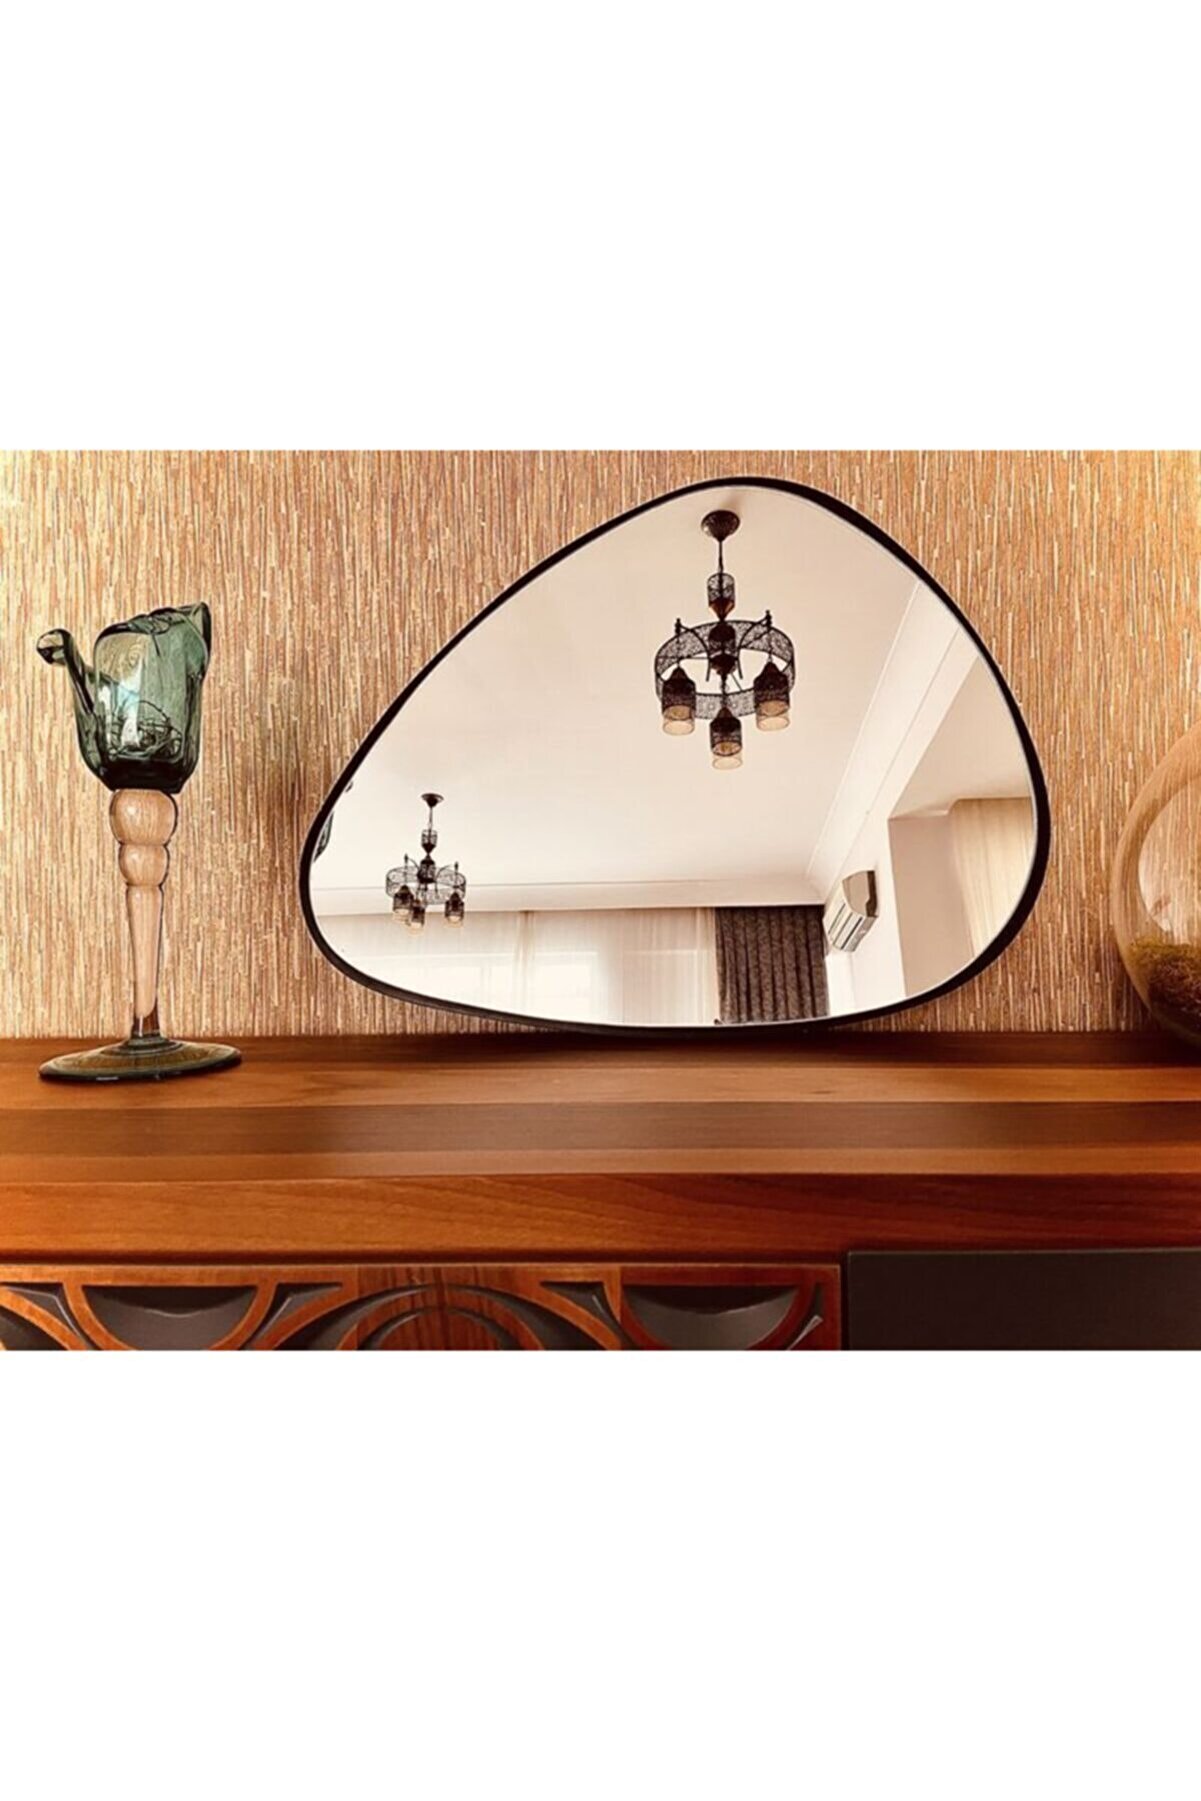 enc Home Asimetrik Tasarım Dekoratif Ayna